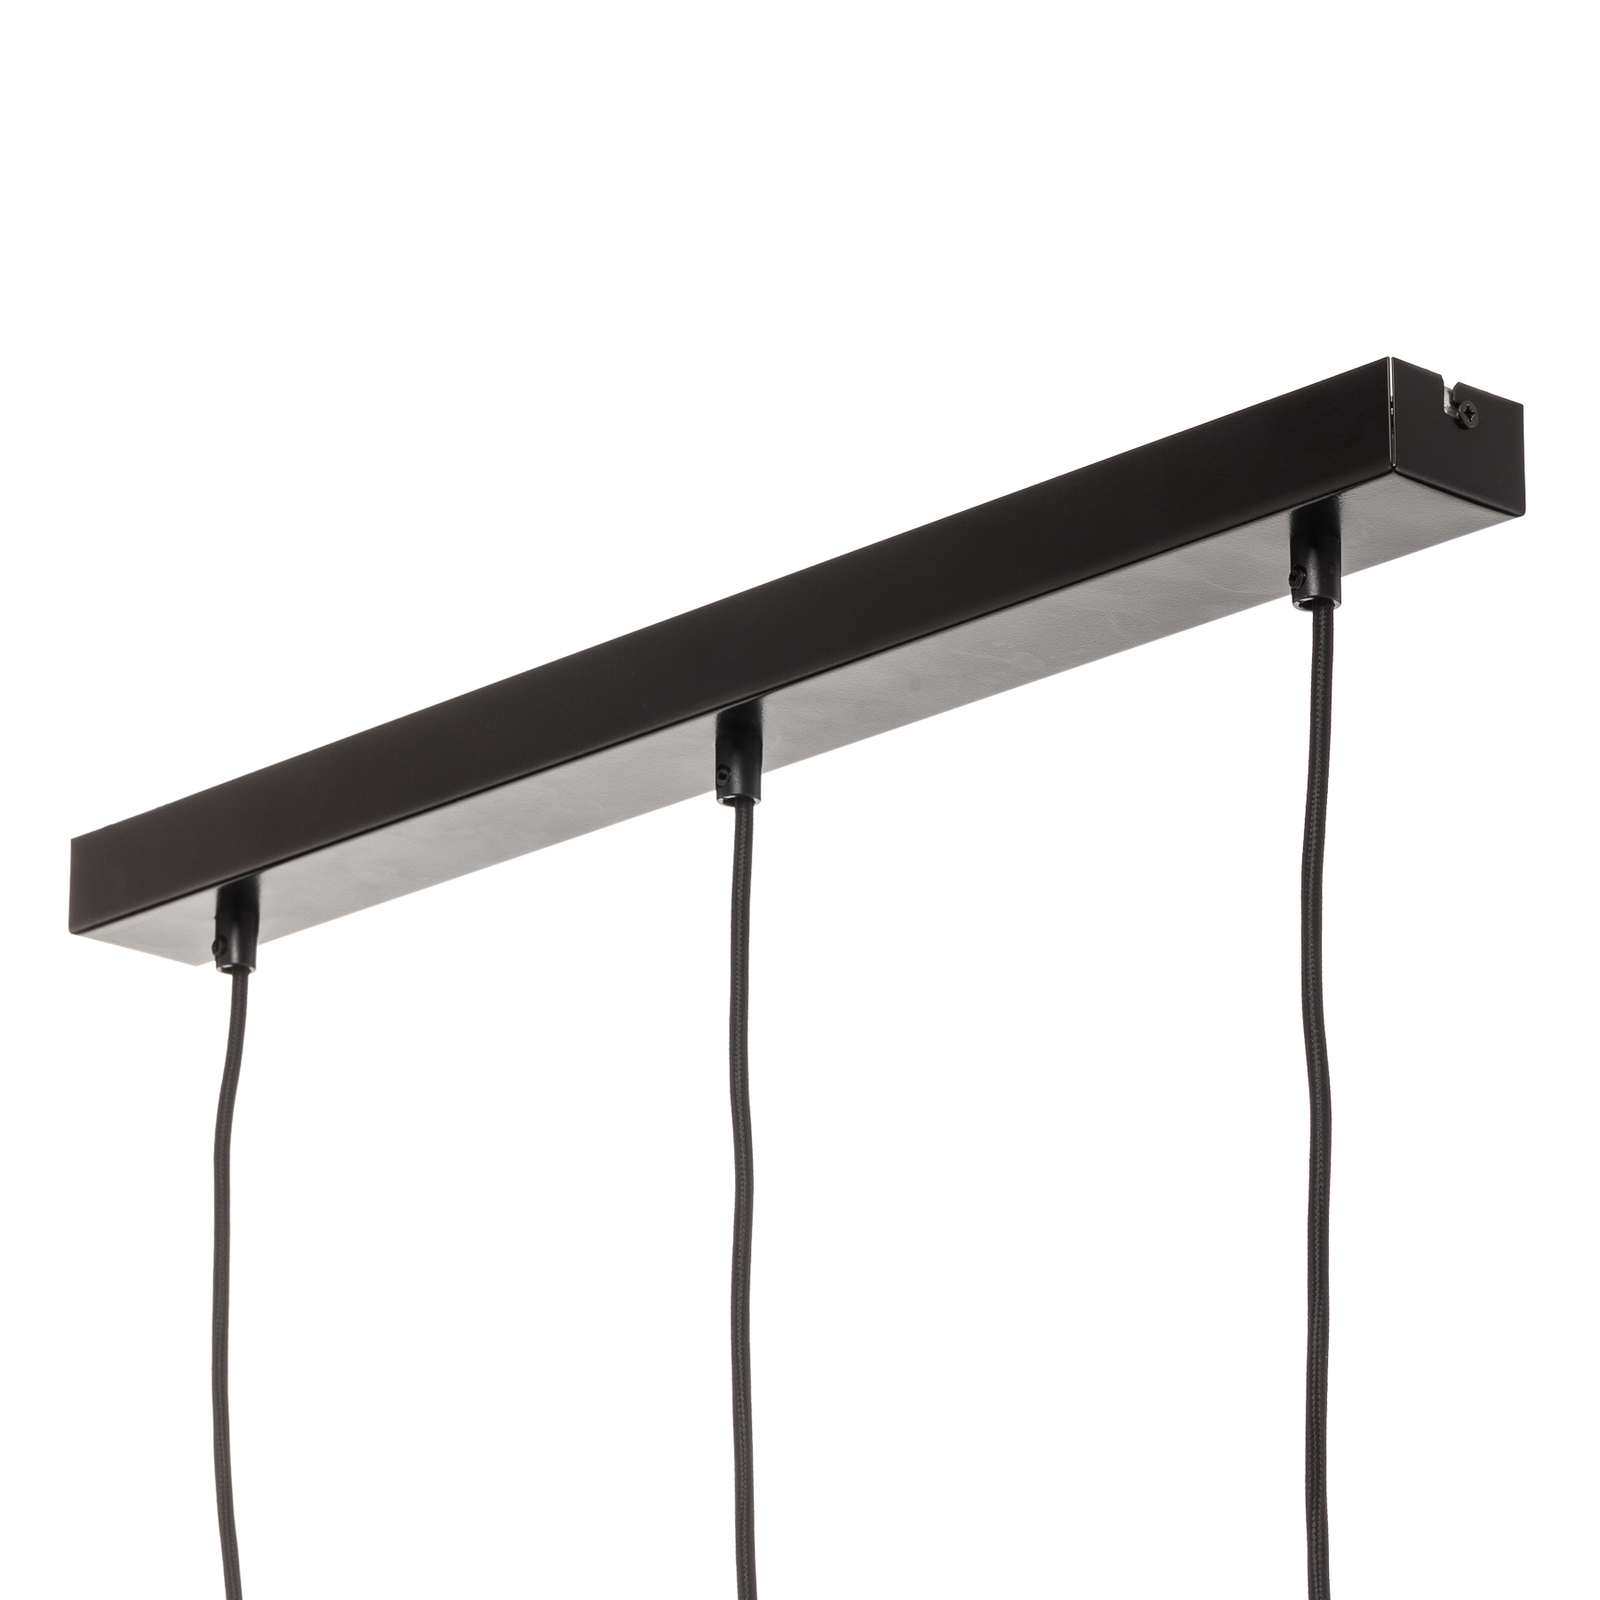 Hanglamp Vitrio, 3-lamps, langwerpig, zwart/wit